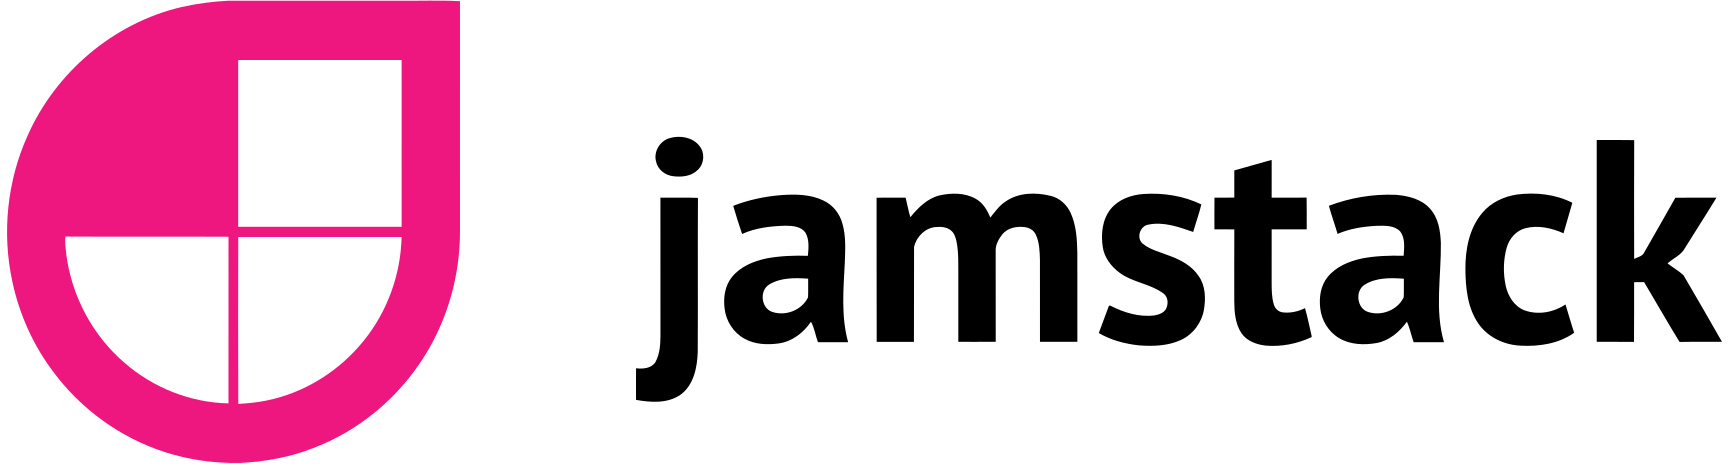 jamstack-logo